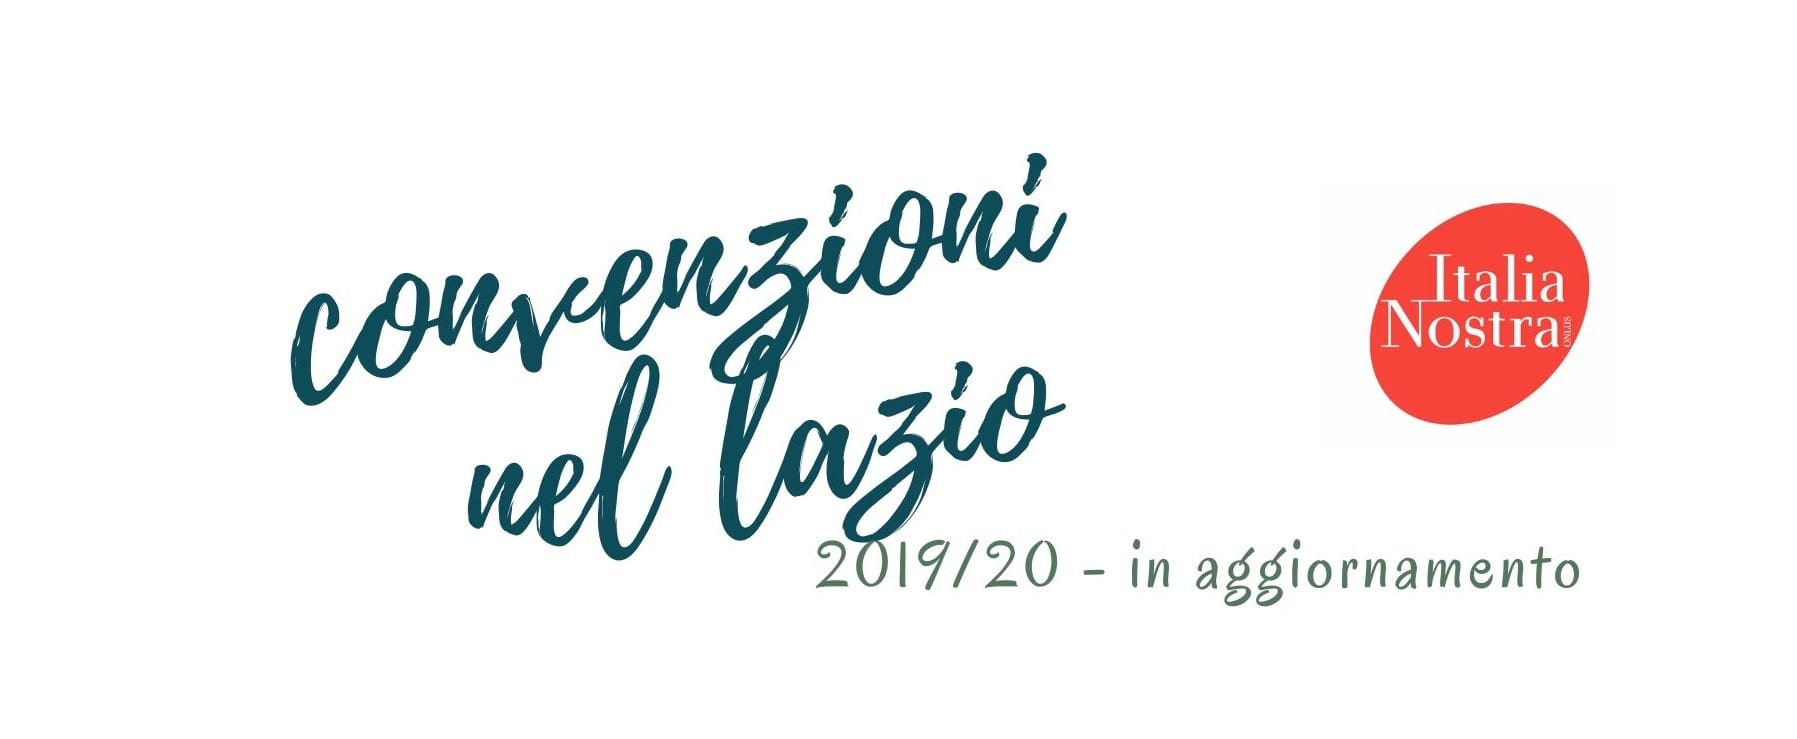 Convenzioni Italia Nostra sezione Lazio